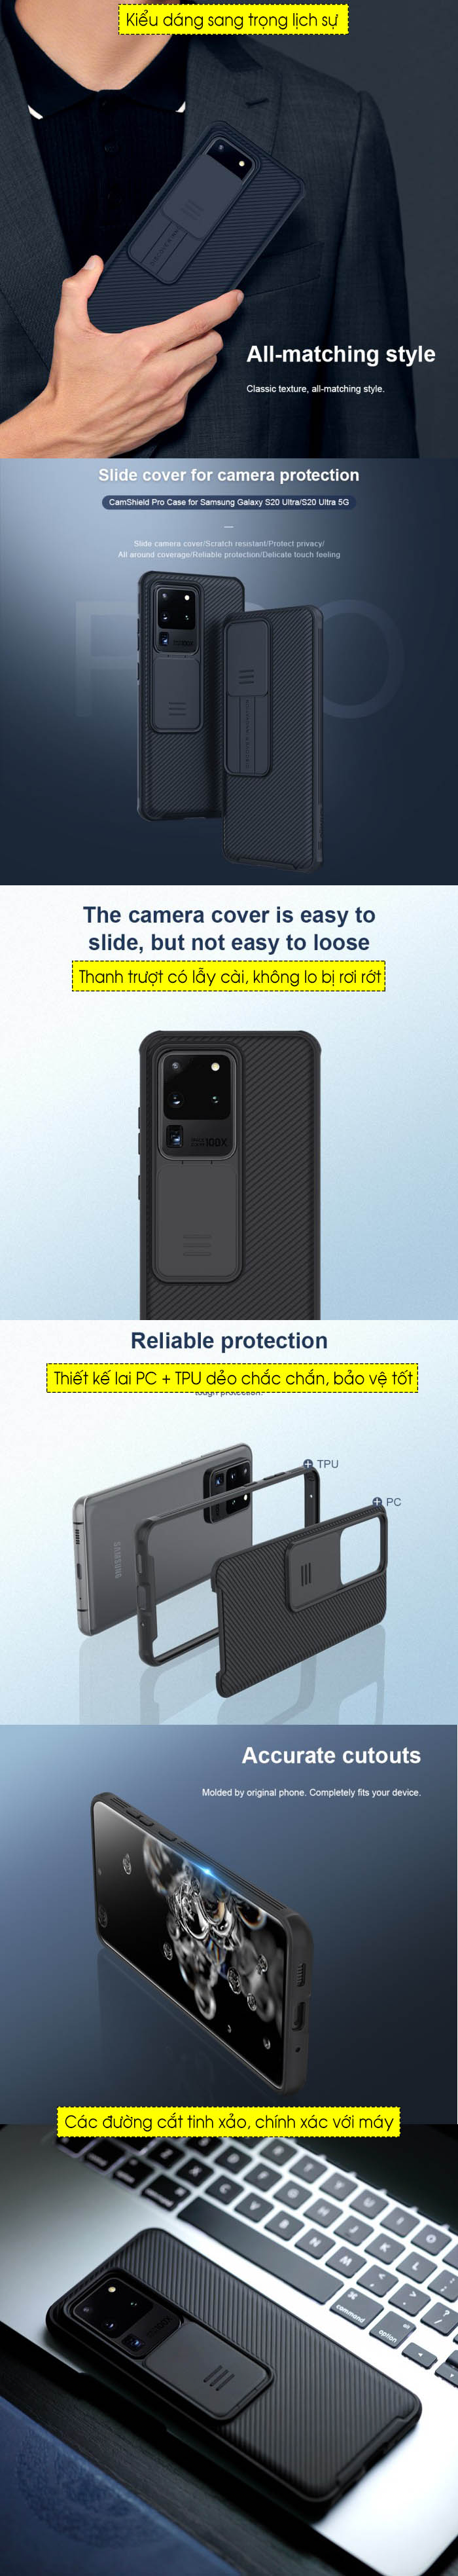 Ốp lưng Samsung S20 Ultra Nillkin Camshield bảo vệ Camera 5